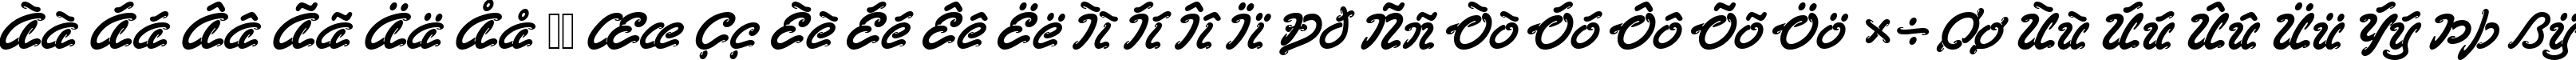 Пример написания русского алфавита шрифтом LasVegasD